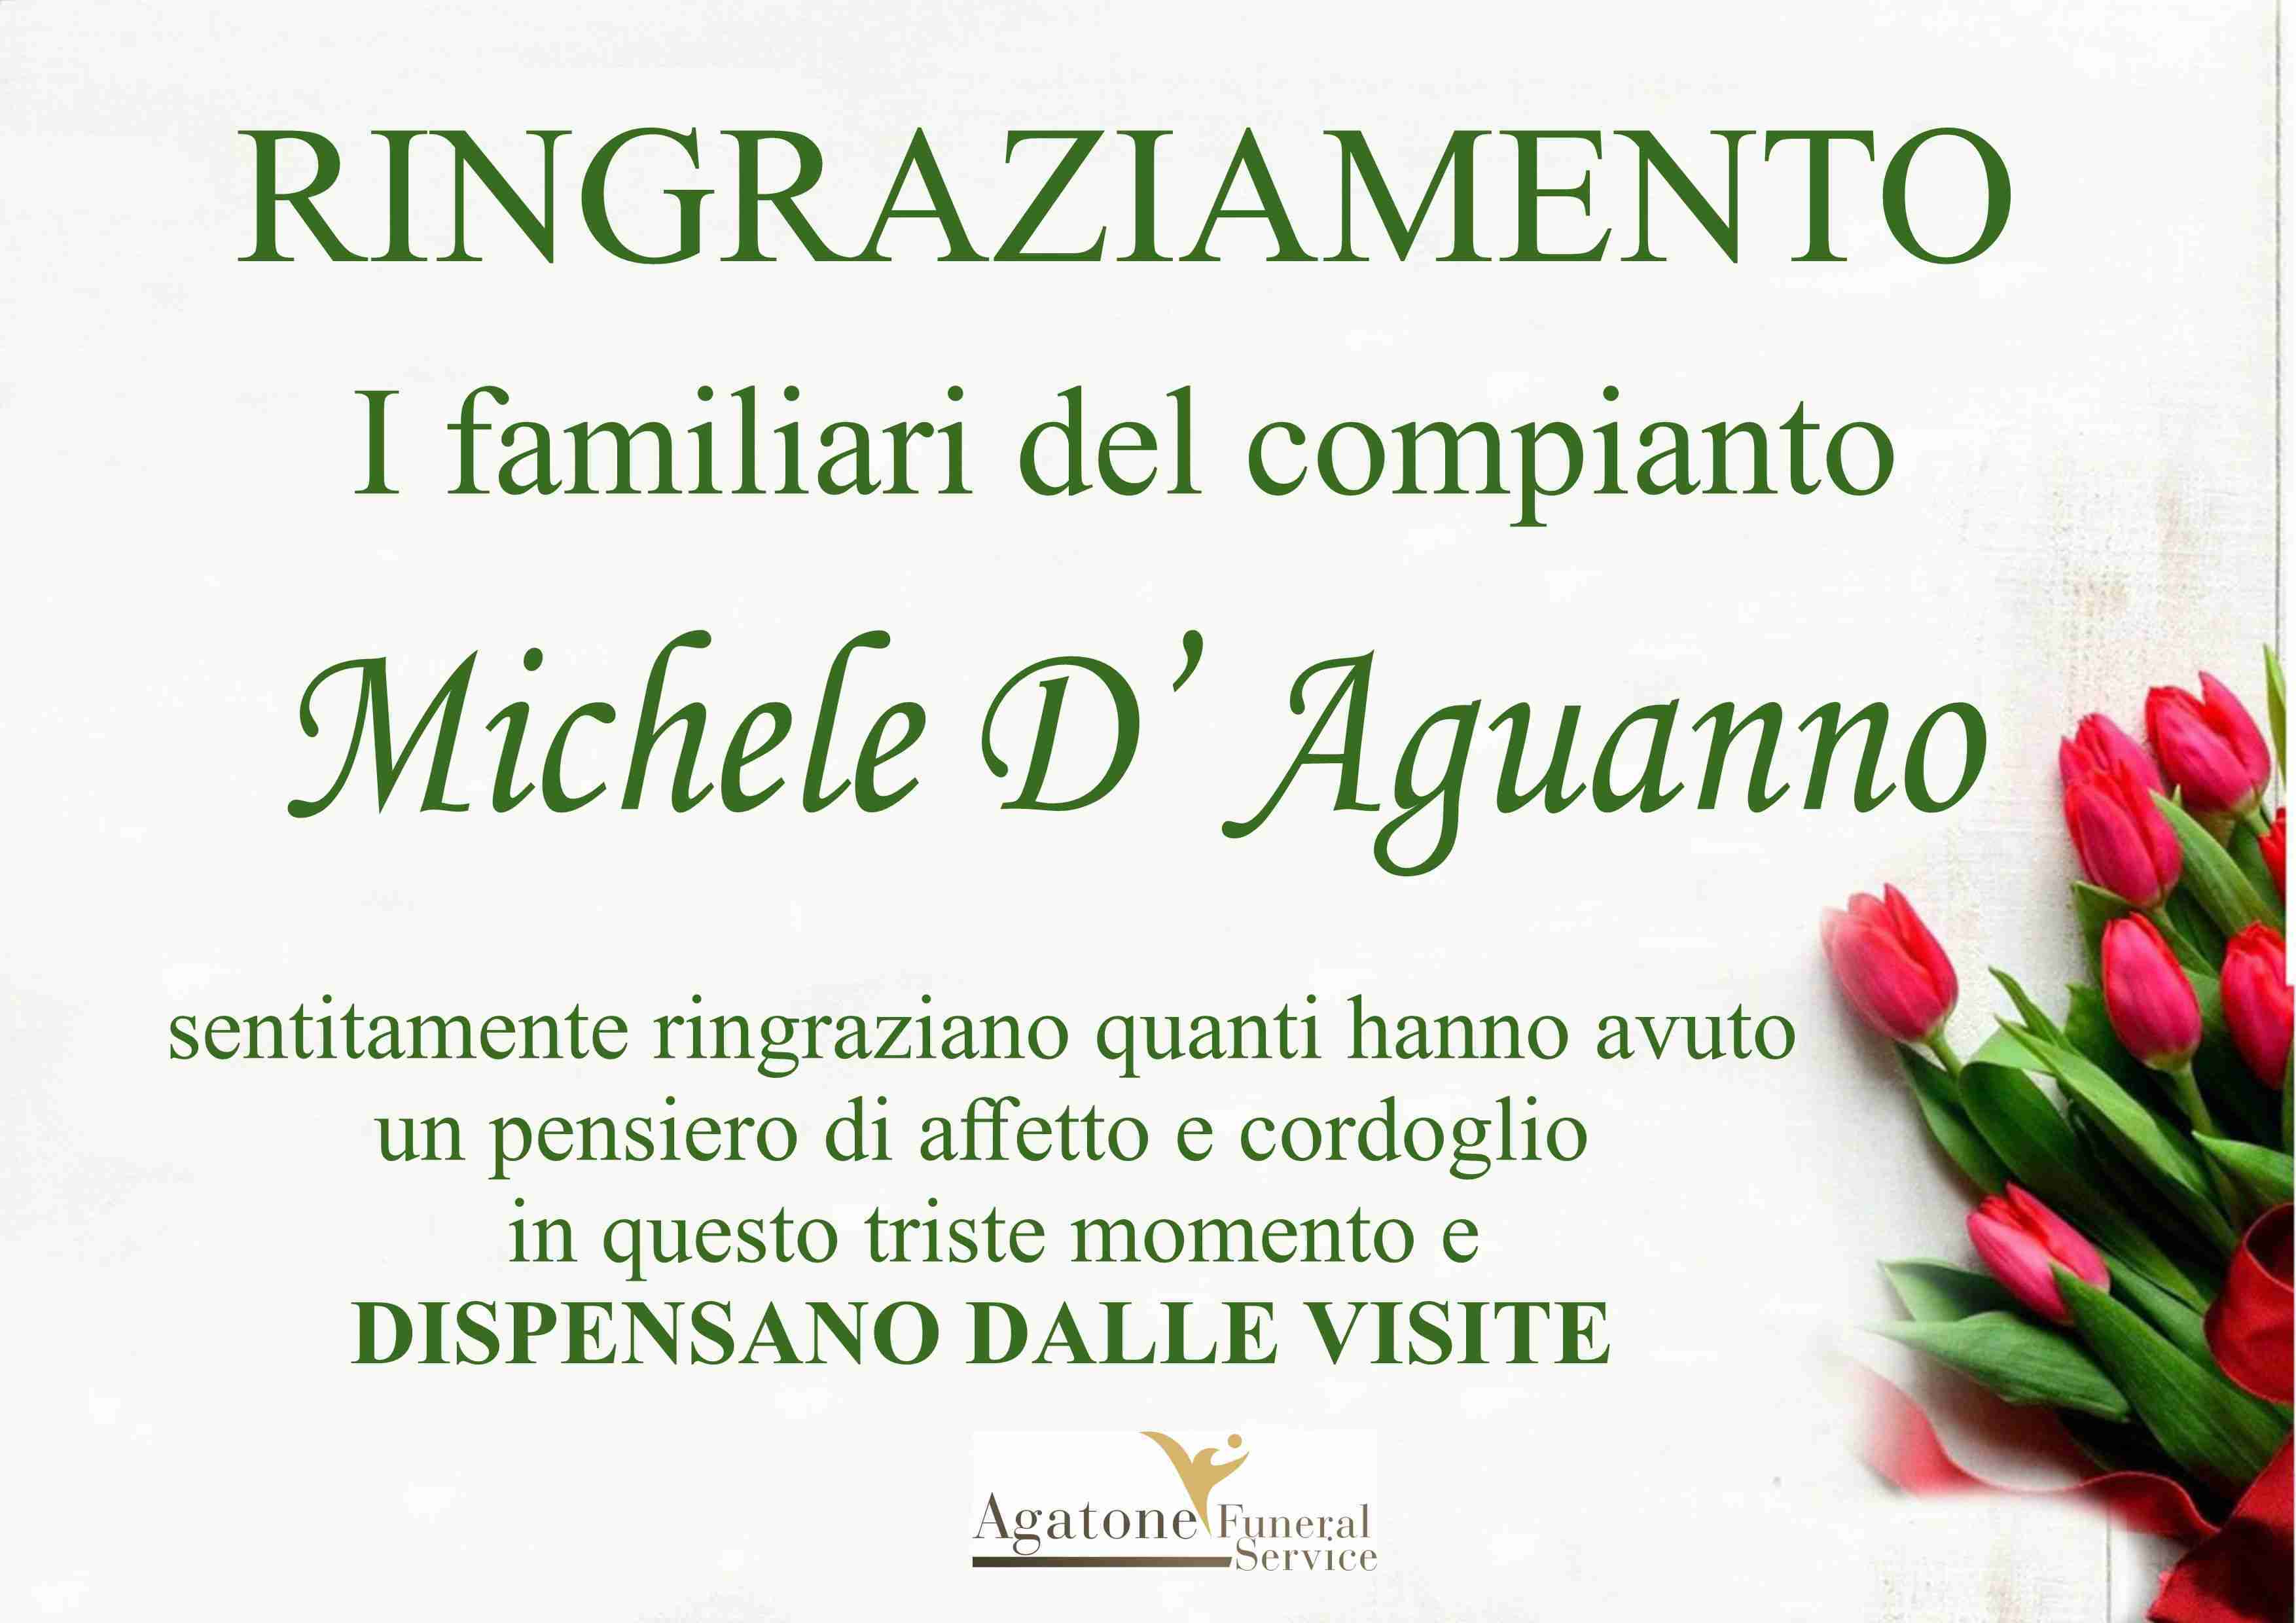 Michele D’Aguanno